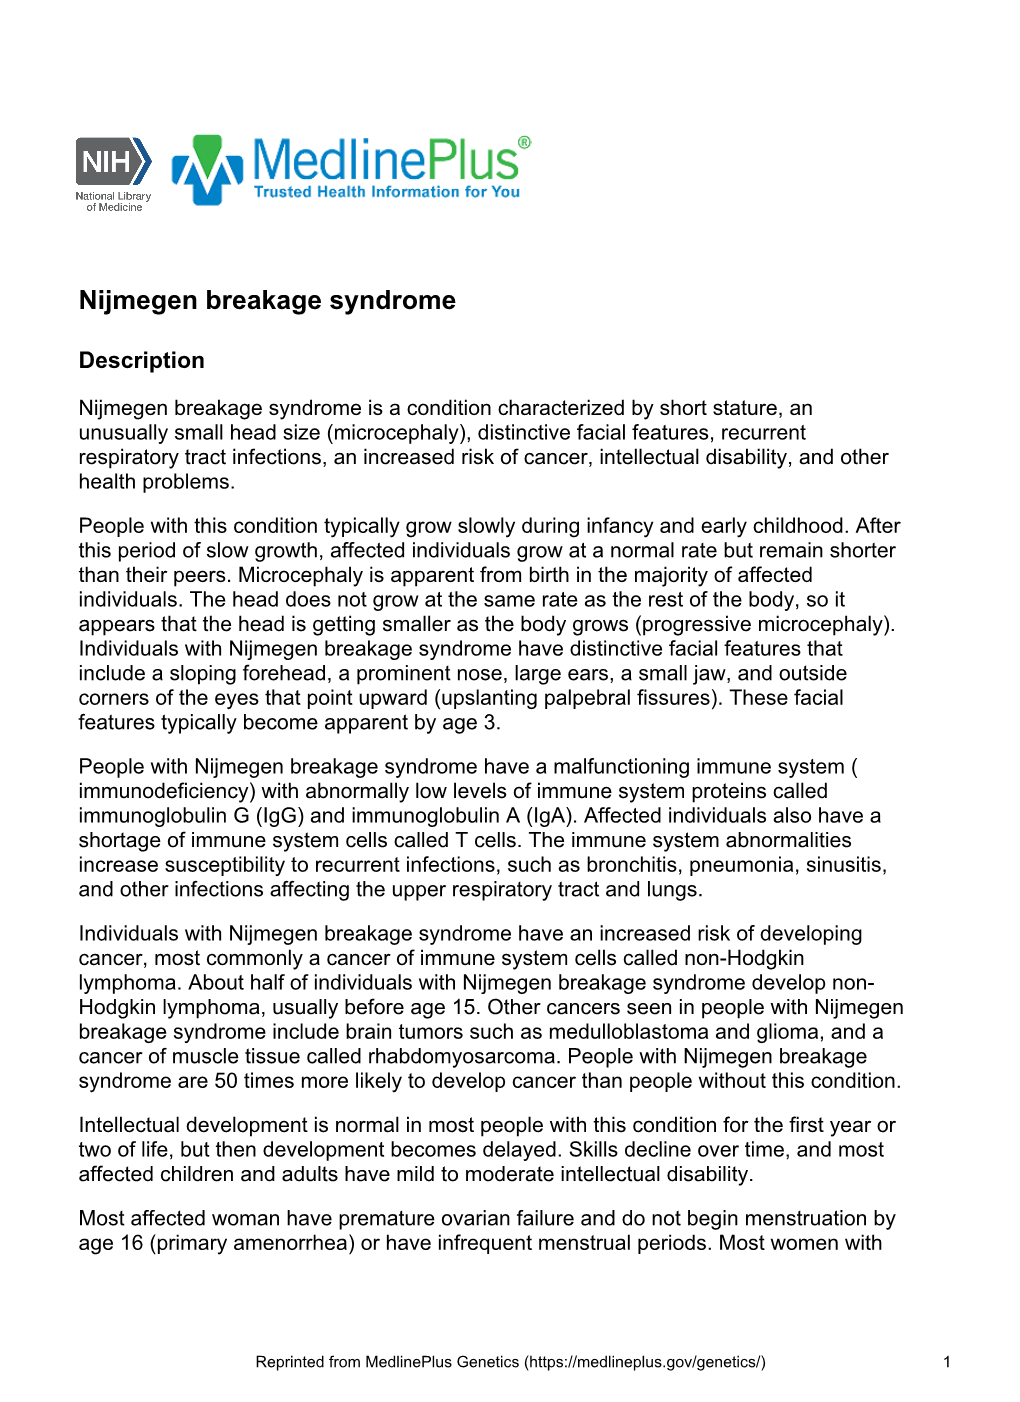 Nijmegen Breakage Syndrome